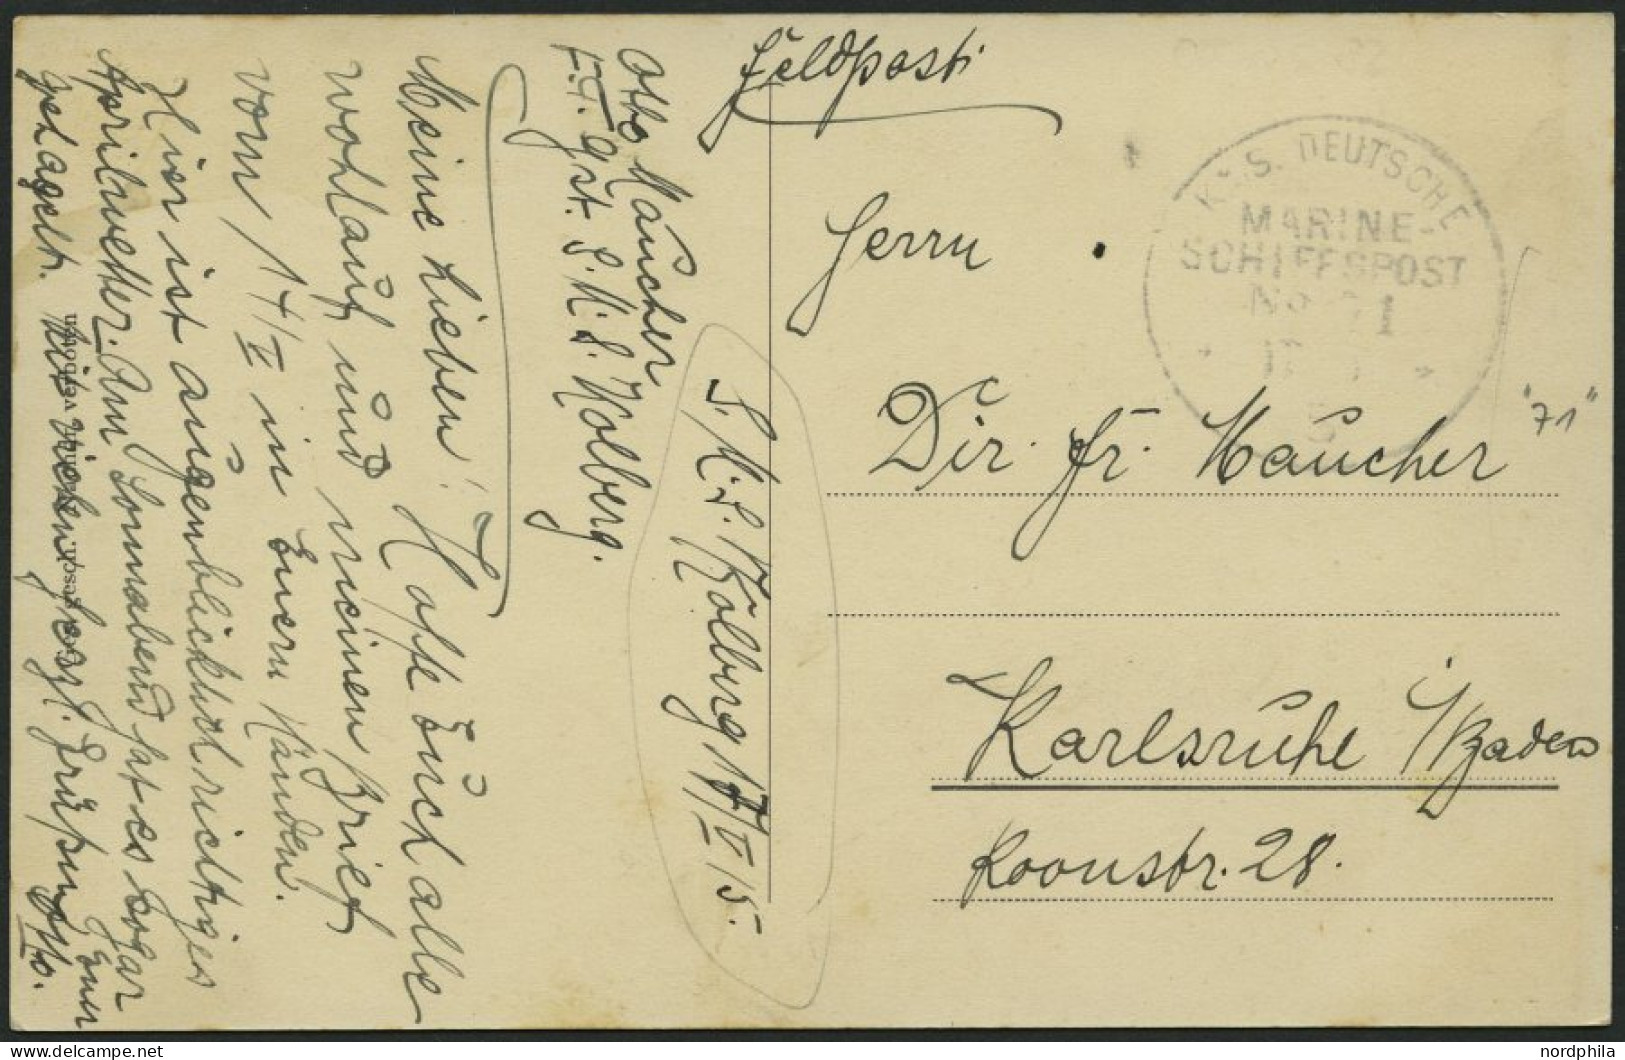 MSP VON 1914 - 1918 71 (Kleiner Kreuzer KOLBERG), 17.5.1915, Feldpost-Ansichtskarte (S.M.S. Emden) Von Bord Der Kolberg, - Schiffahrt